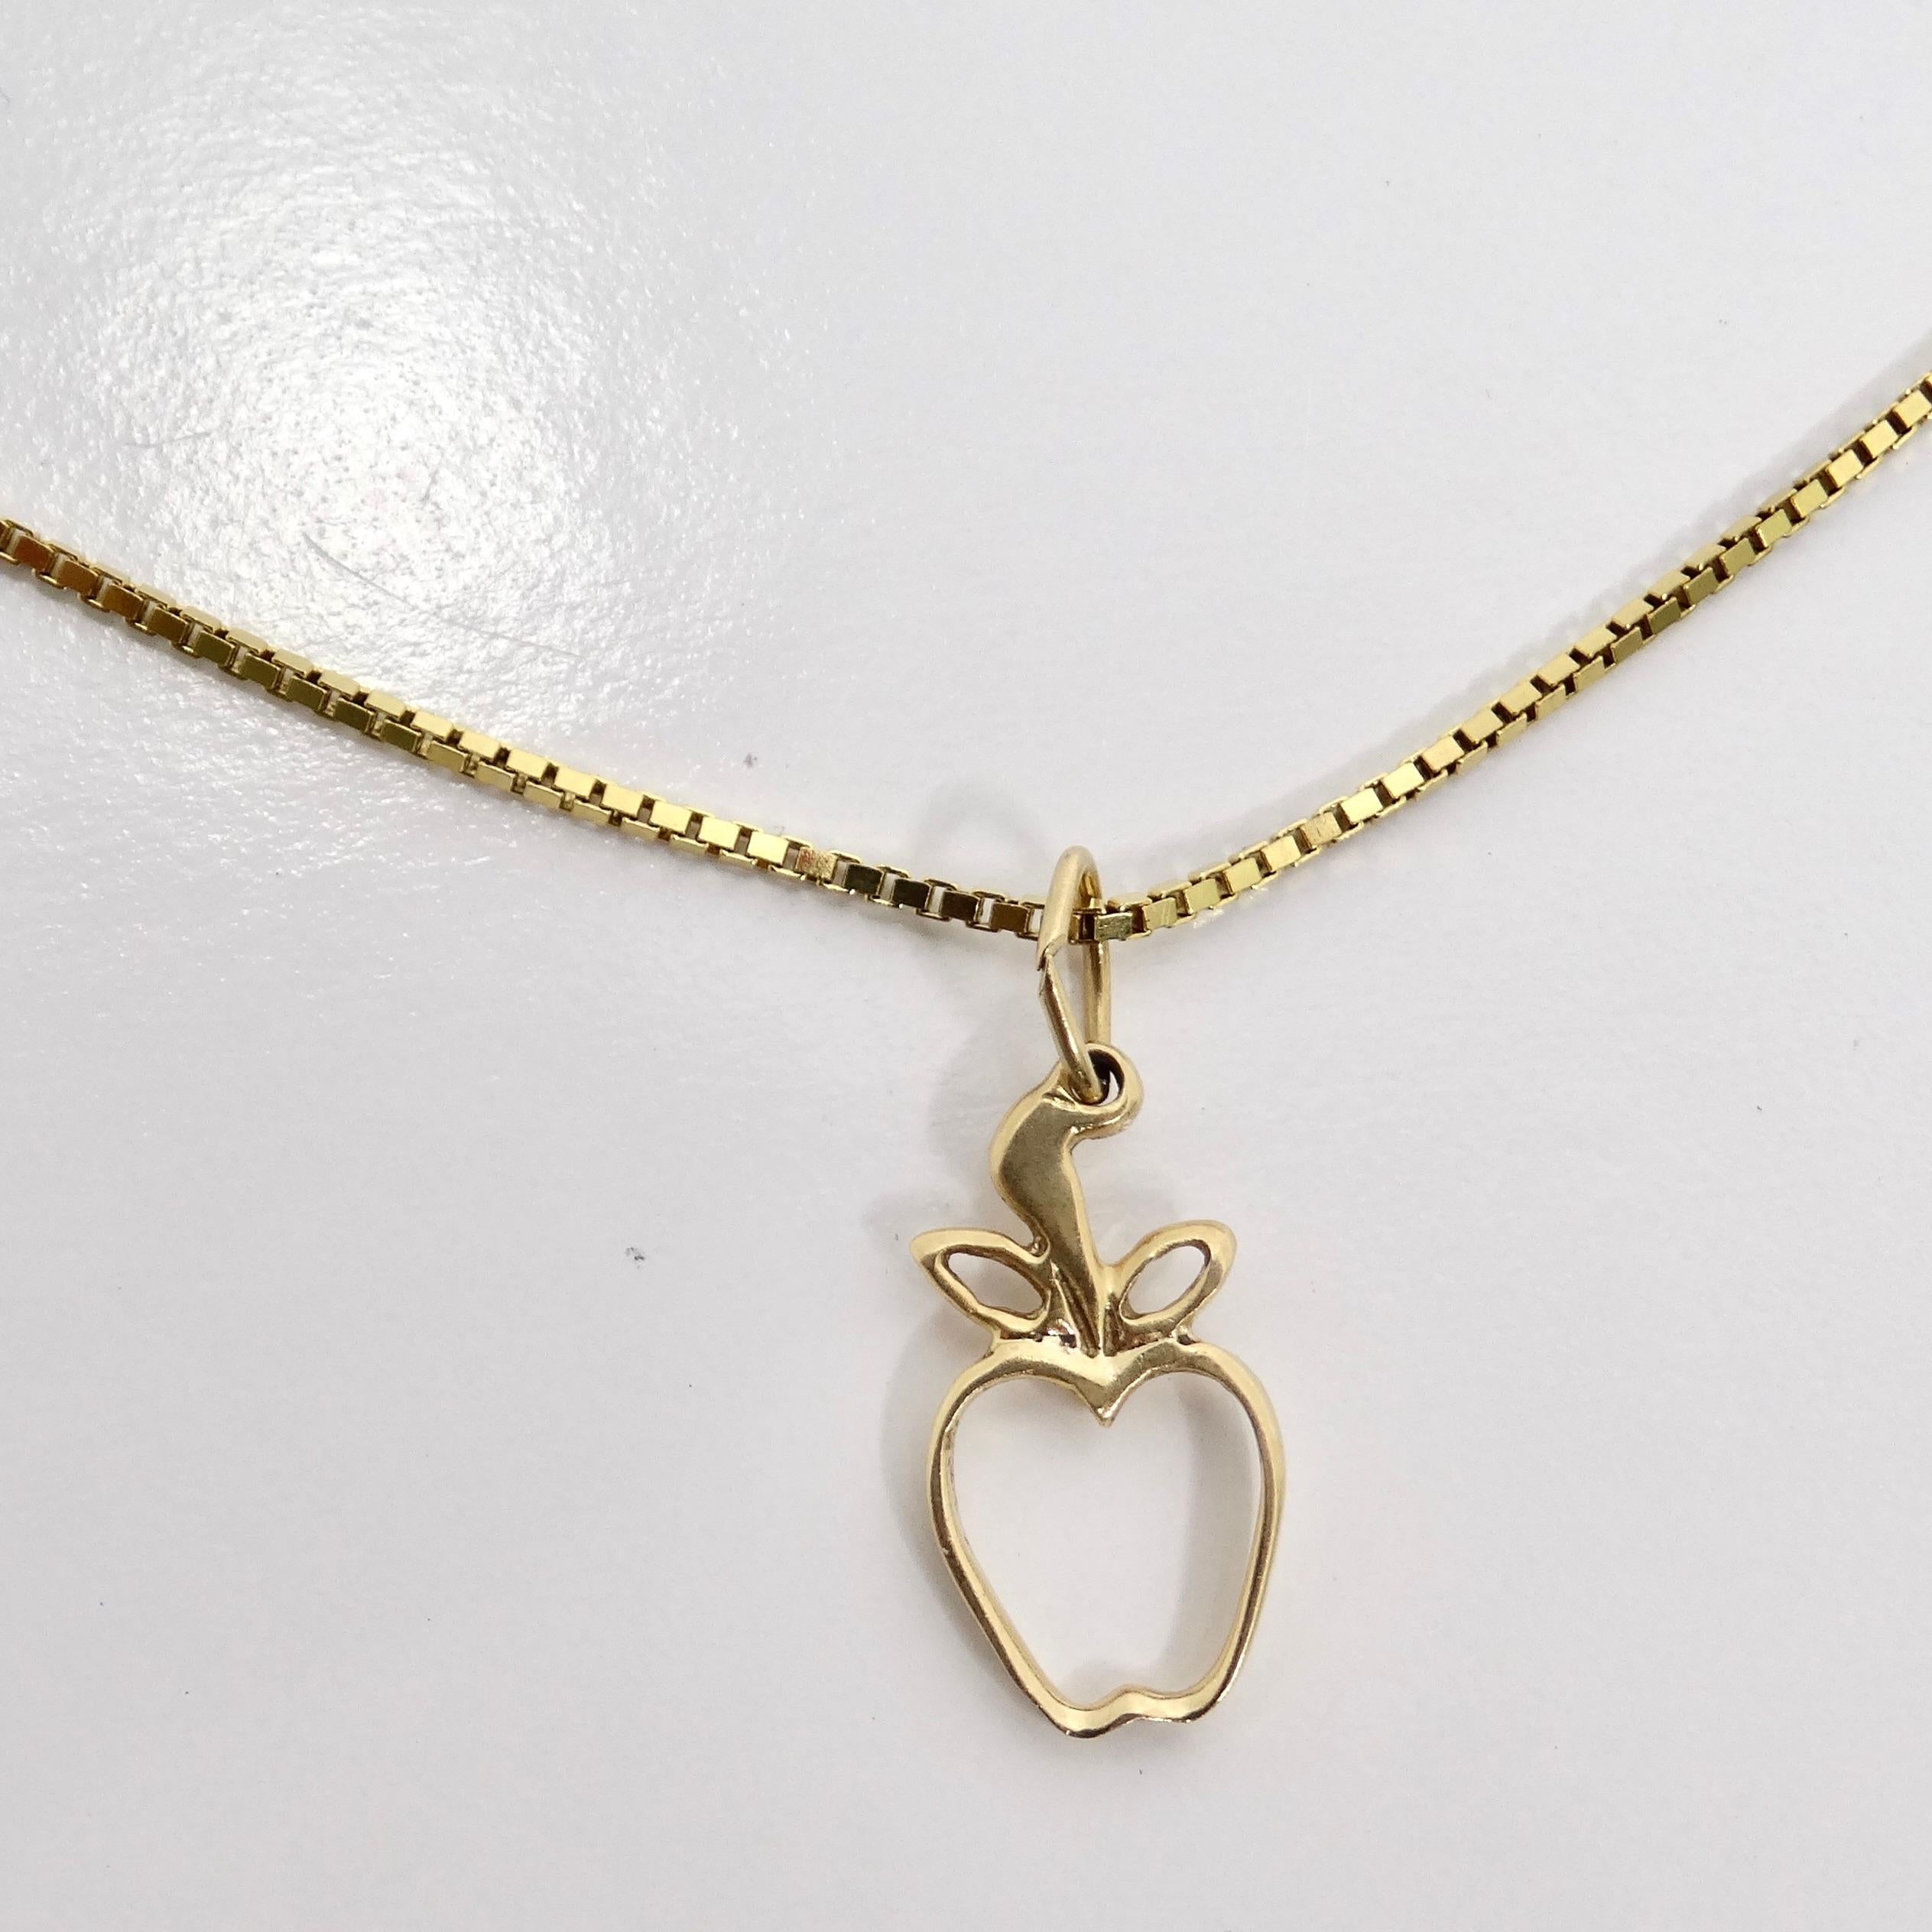 Voici le collier à pendentif pomme en or massif 14K, une pièce charmante et intemporelle qui ajoute une touche de fantaisie à votre look de tous les jours. Fabriqué en or jaune 14 carats, ce collier est orné d'un adorable pendentif en forme de